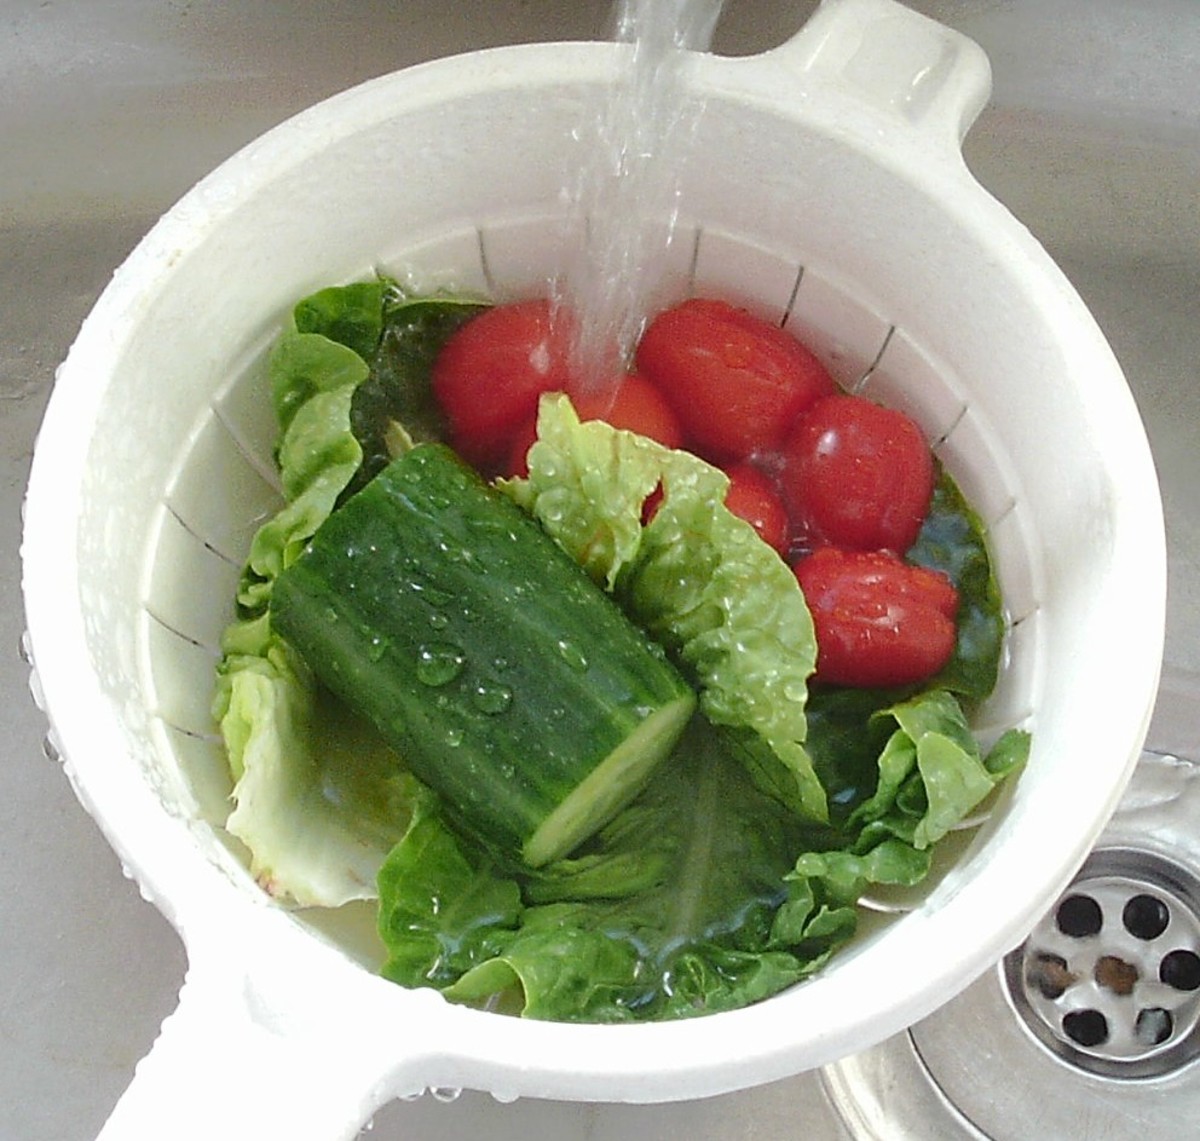 Wash the salad vegetables.